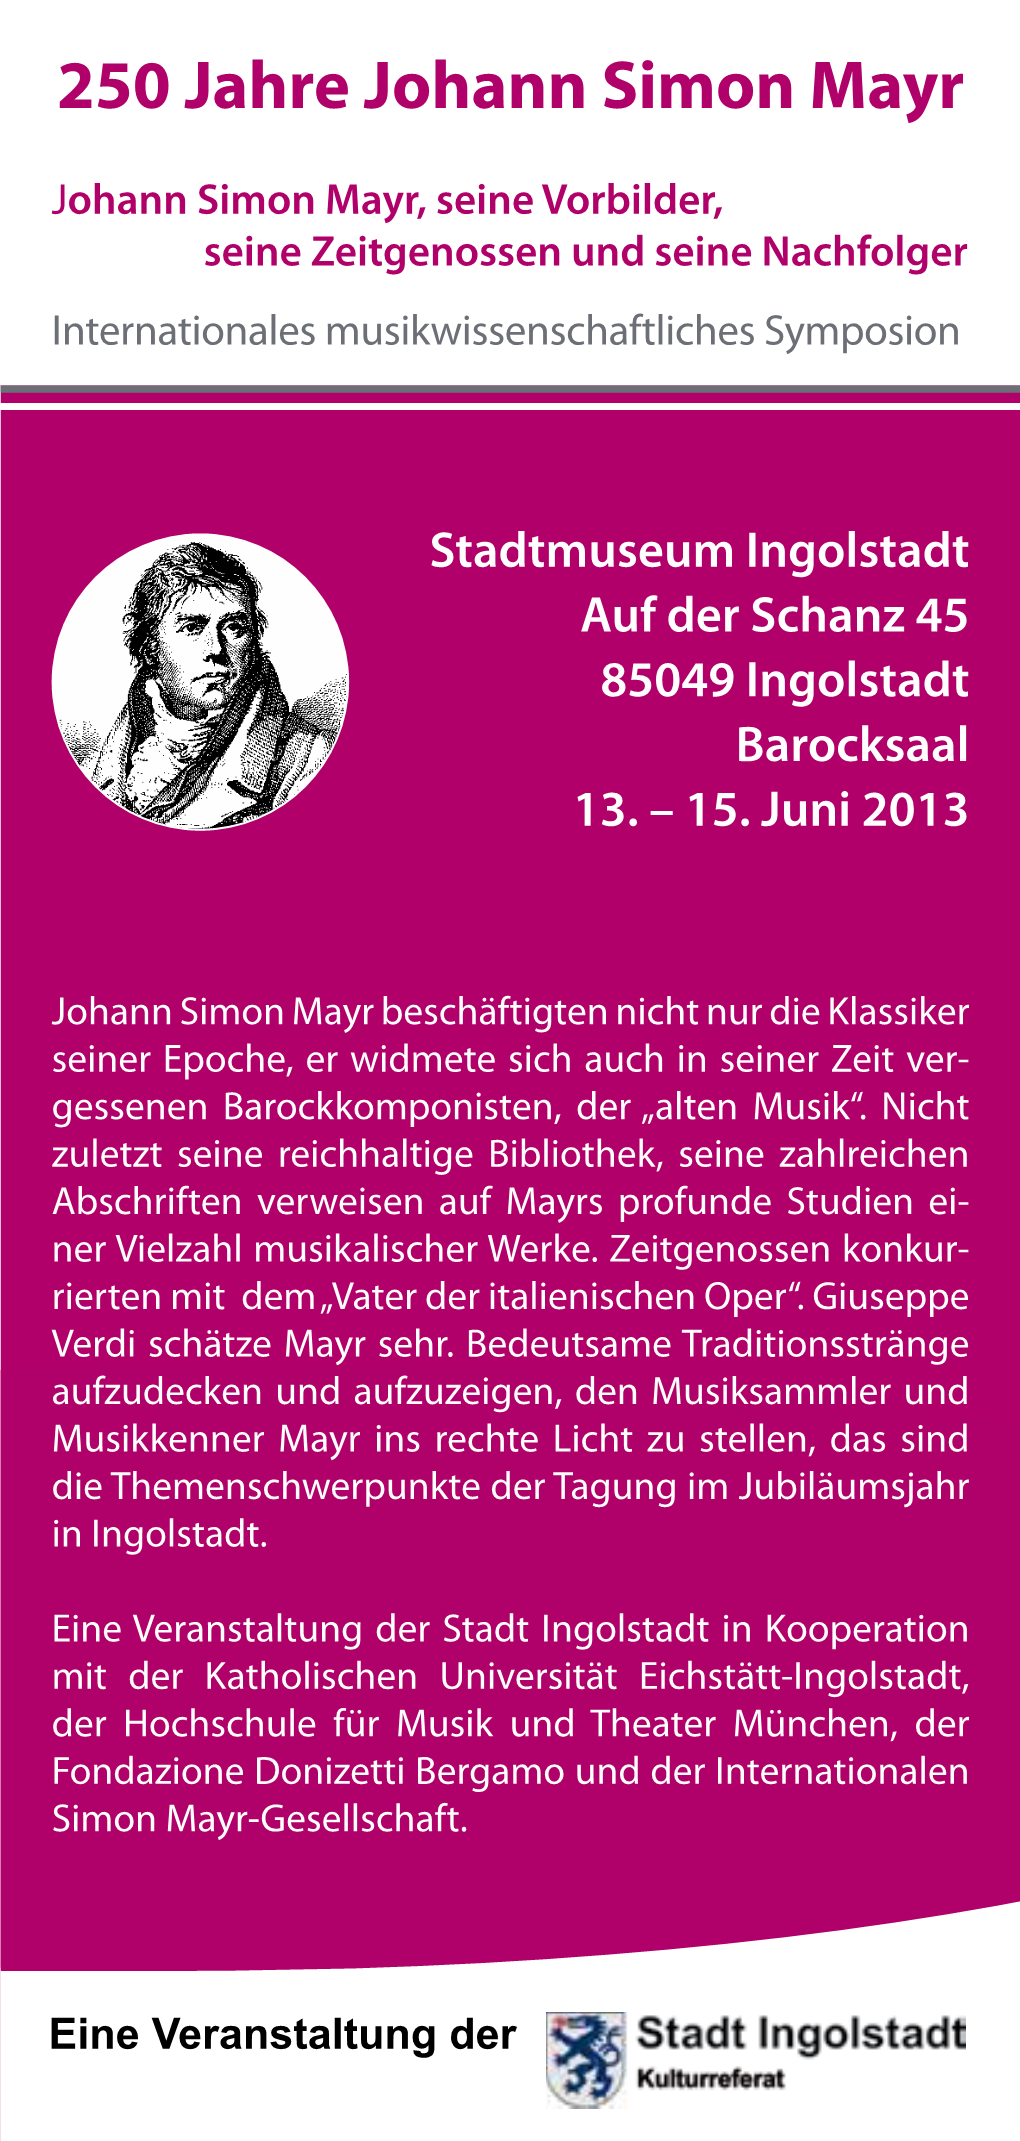 250 Jahre Johann Simon Mayr